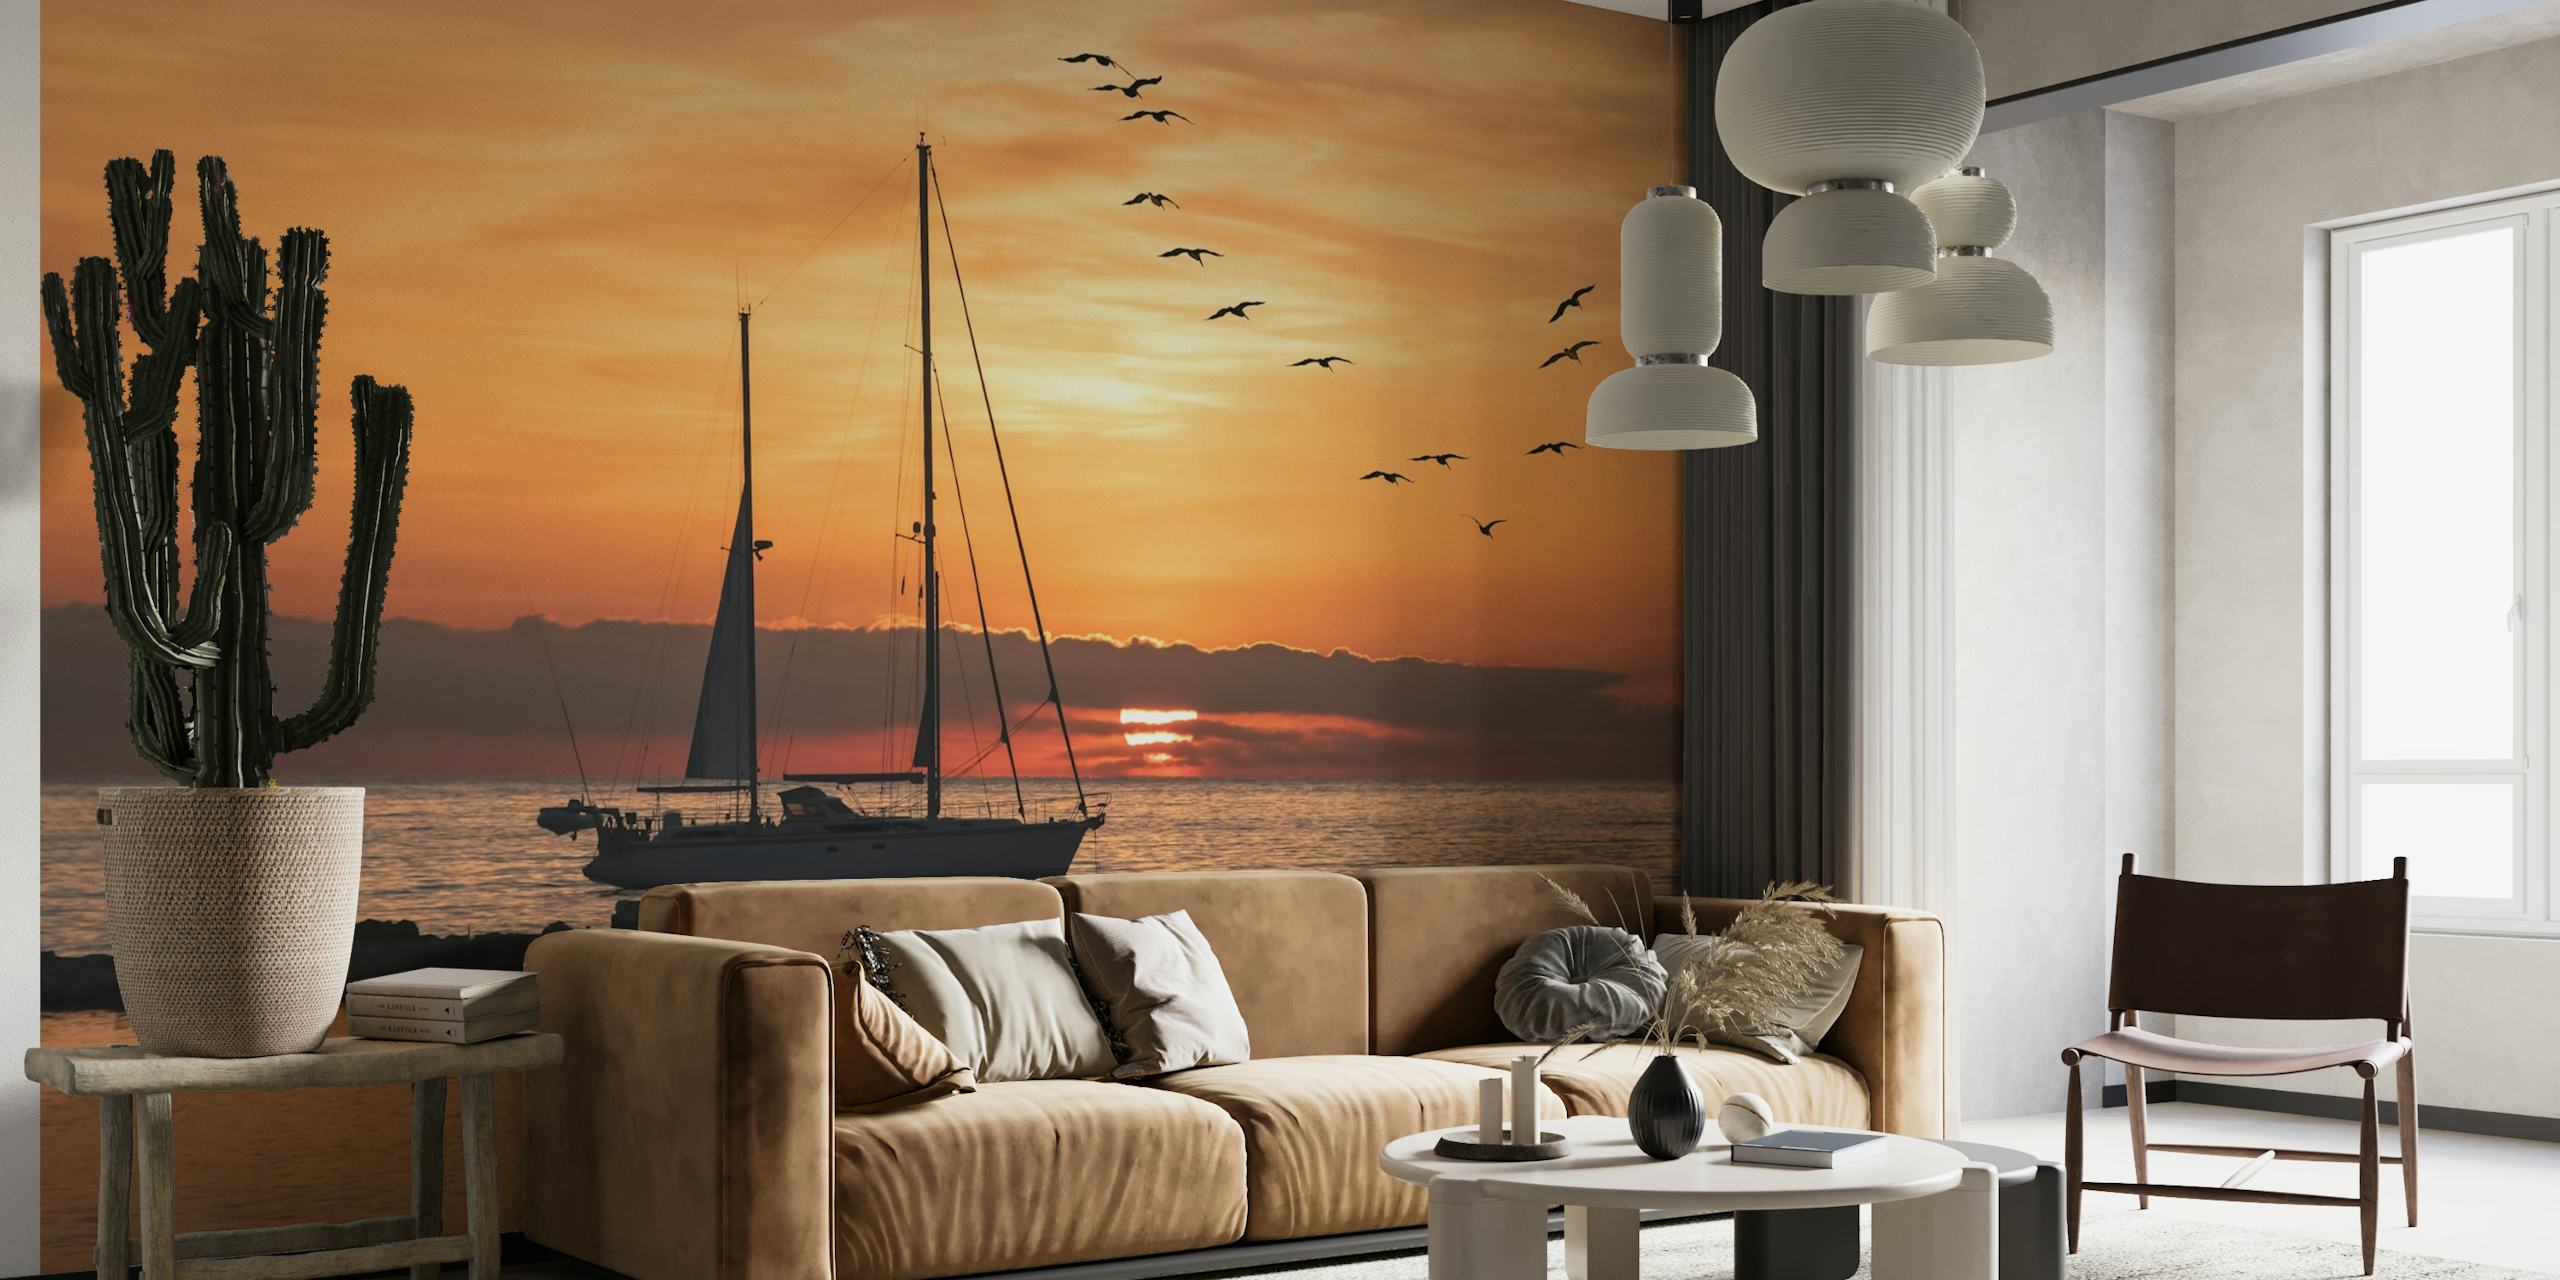 Decorazione murale con silhouette di barca a vela sullo sfondo di un tramonto con uccelli in volo sul mare